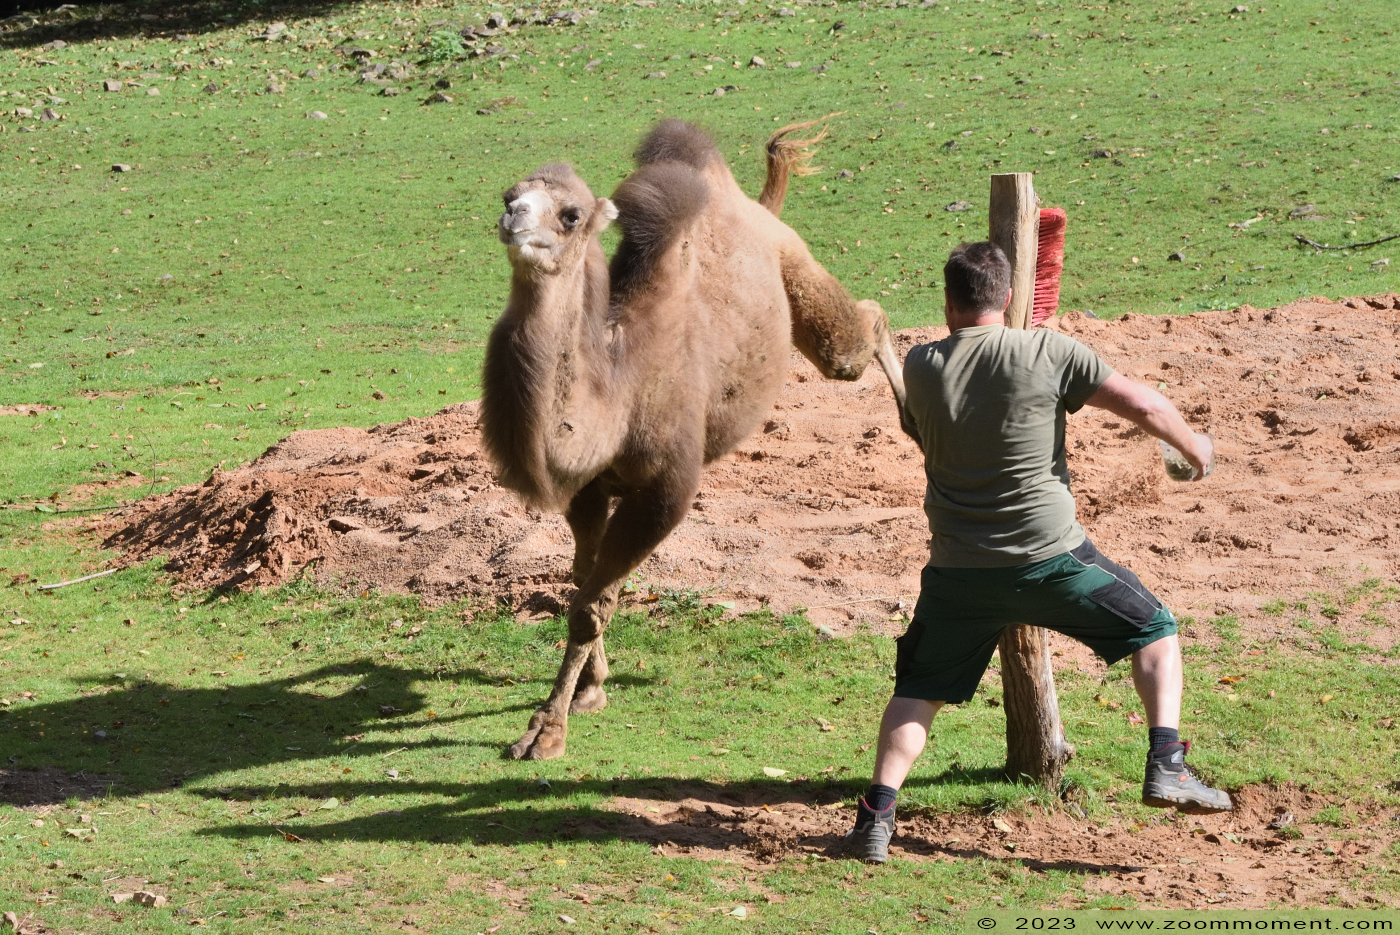 kameel ( Camelus bactrianus bactrianus ) camel
Trefwoorden: Neunkircher Zoo Germany kameel Camelus bactrianus bactrianus camel